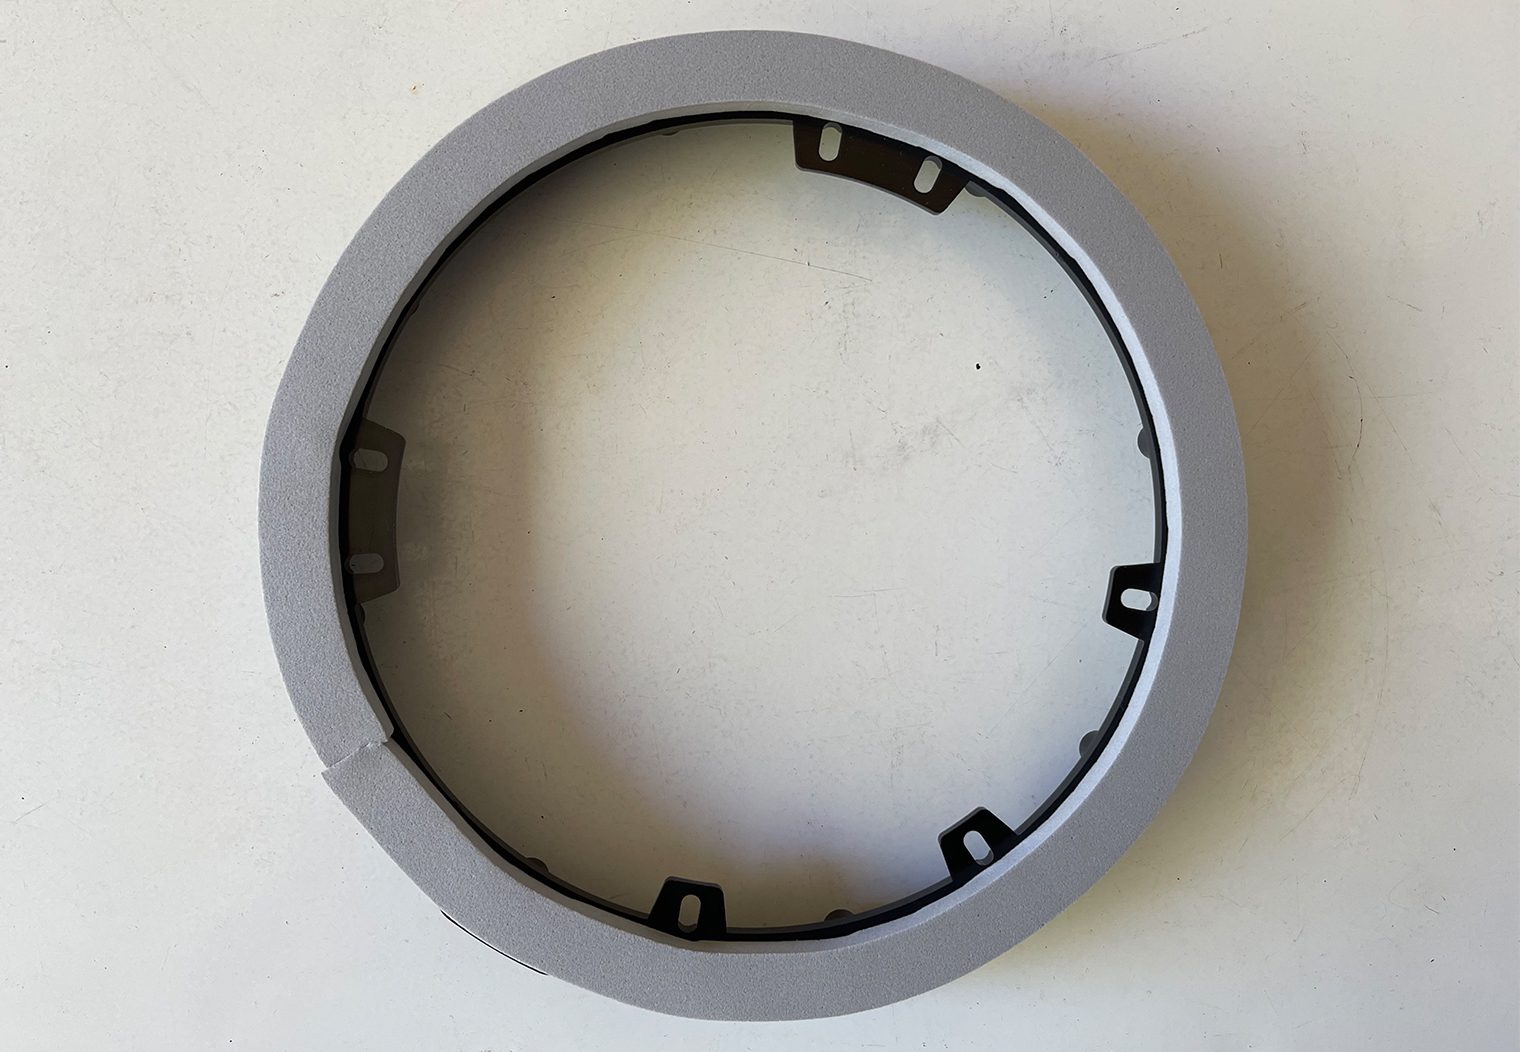 2021 F-150 Rear Door Speaker Adapters Foam Tape Closeup